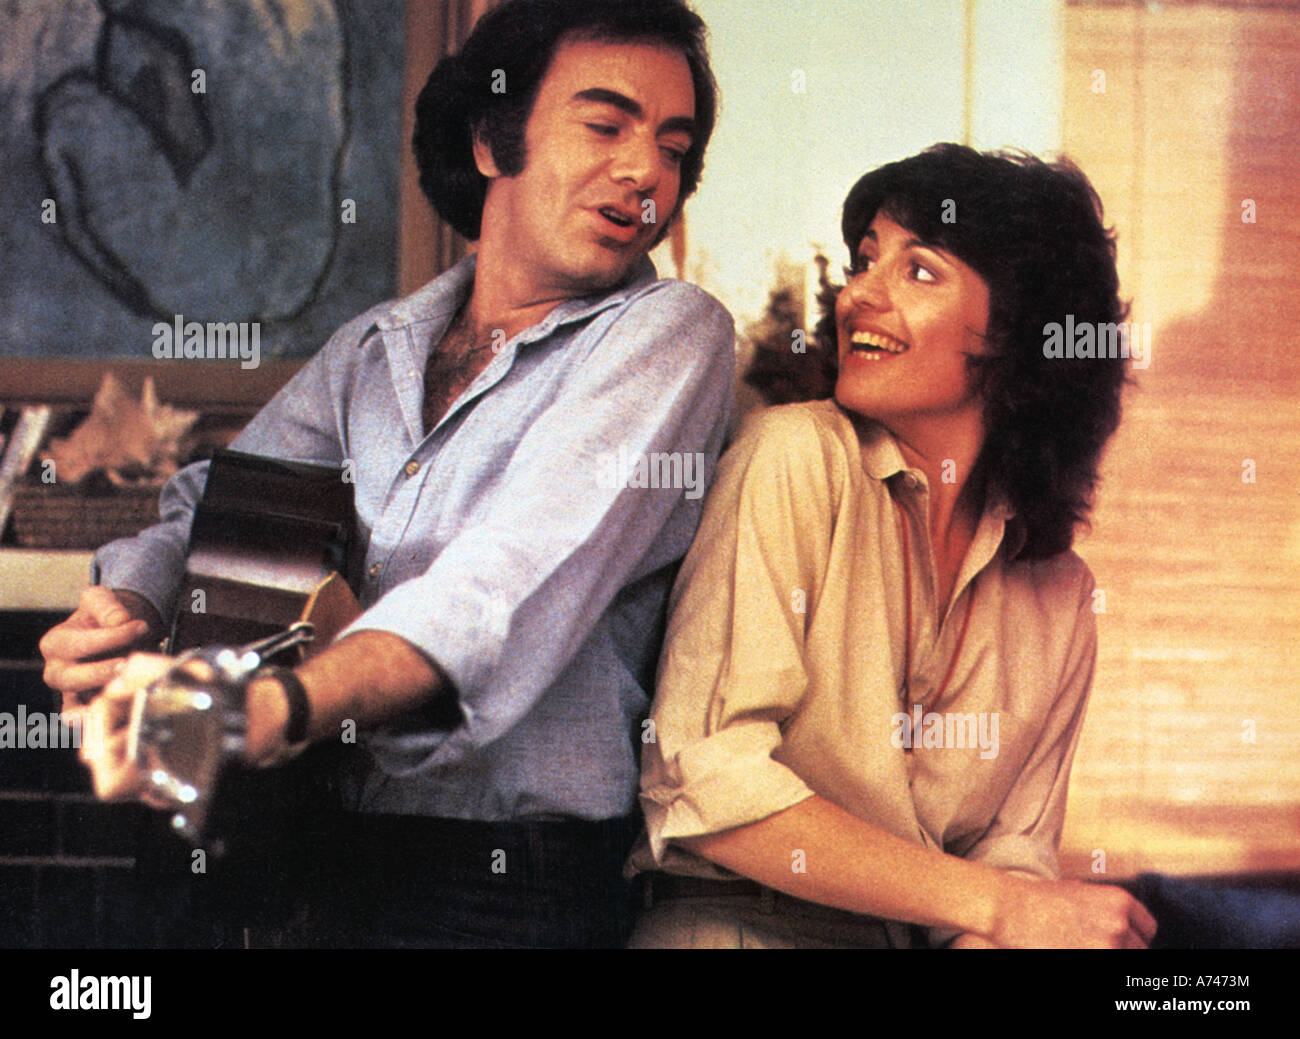 JAZZ SINGER  1980 EMI film with Neil Diamond and Lucie Arnaz Stock Photo